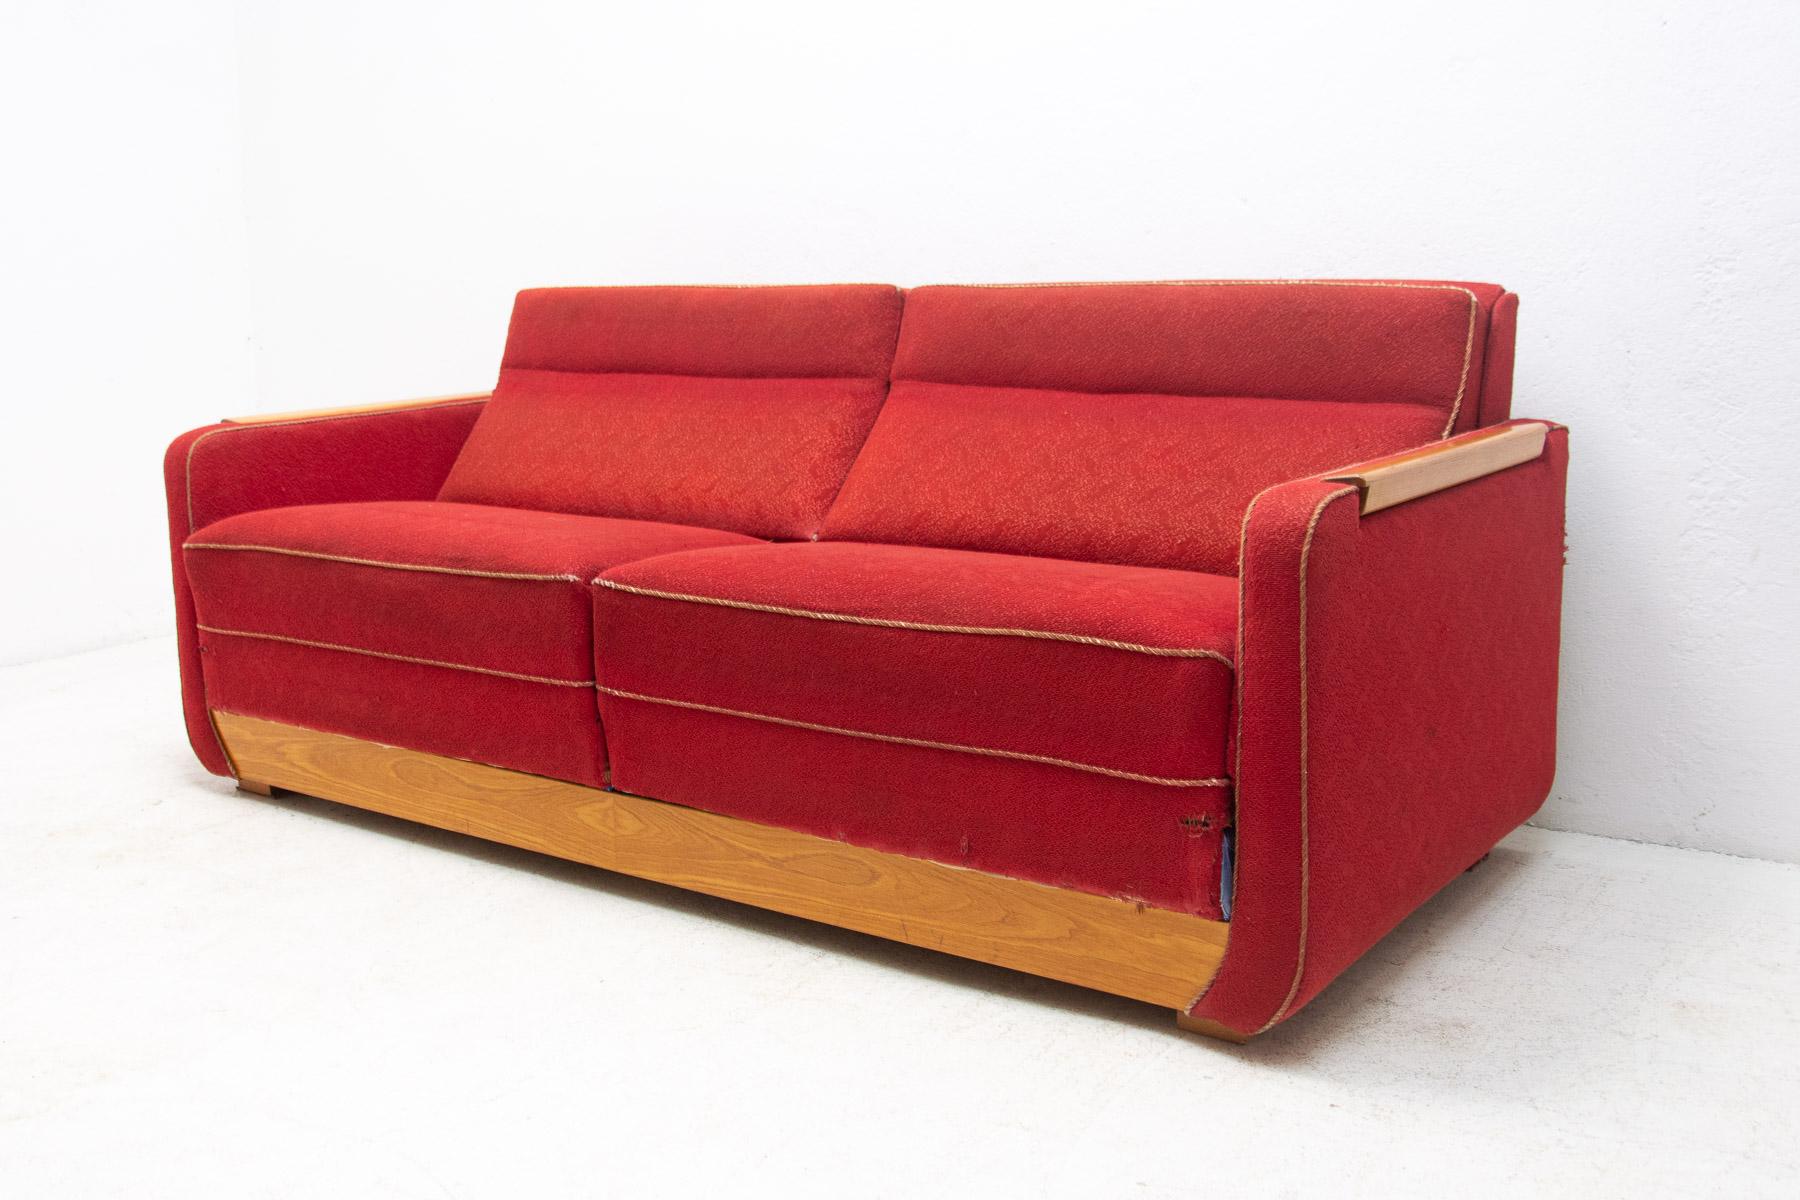 Vollständig gepolstertes modernistisches Sofa mit ausziehbaren Tischen, 1950er Jahre.
Dieses Sofa wurde in den 1950er Jahren in der ehemaligen Tschechoslowakei hergestellt. Es trägt die Handschrift von Jindrich Halabala, könnte aber auch von einem